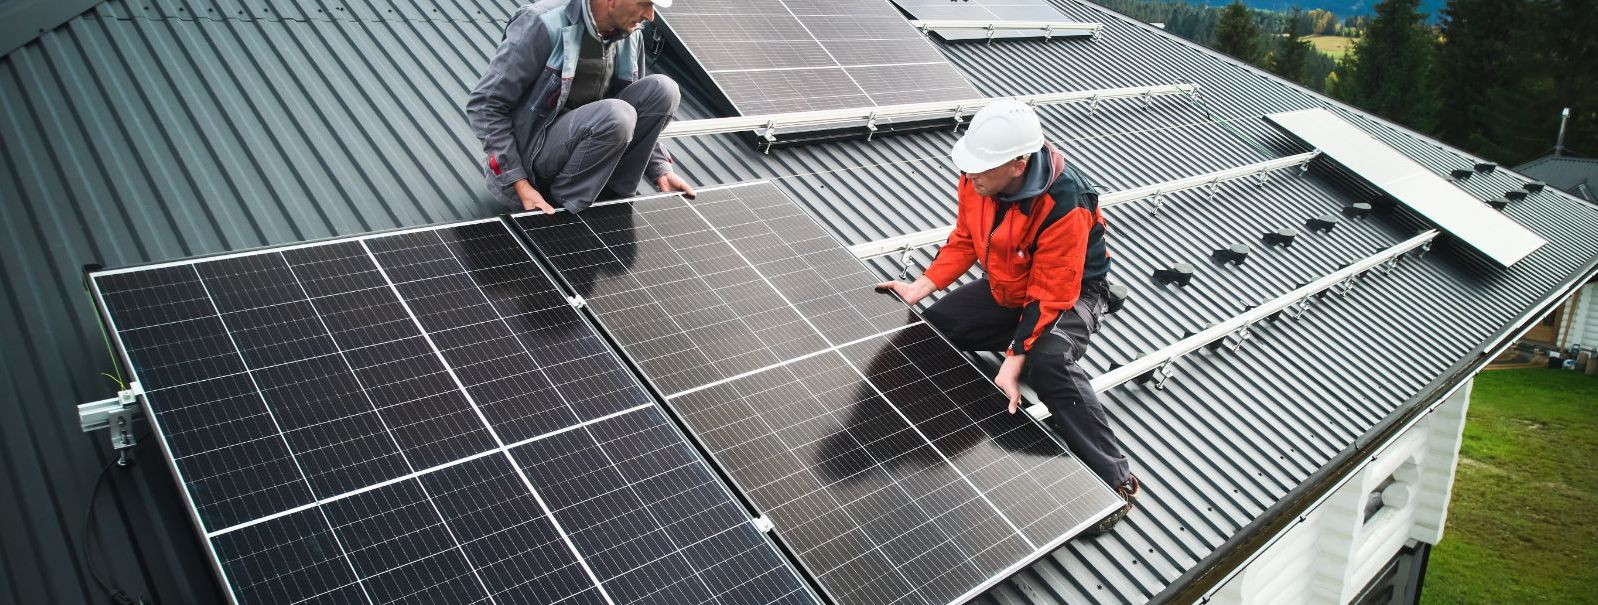 Kuna maailm otsib üha enam jätkusuutlikke lahendusi energiavajaduste rahuldamiseks, kerkib päikeseenergia taastuvenergia sektori esirinnale. Päikeseenergia kasu